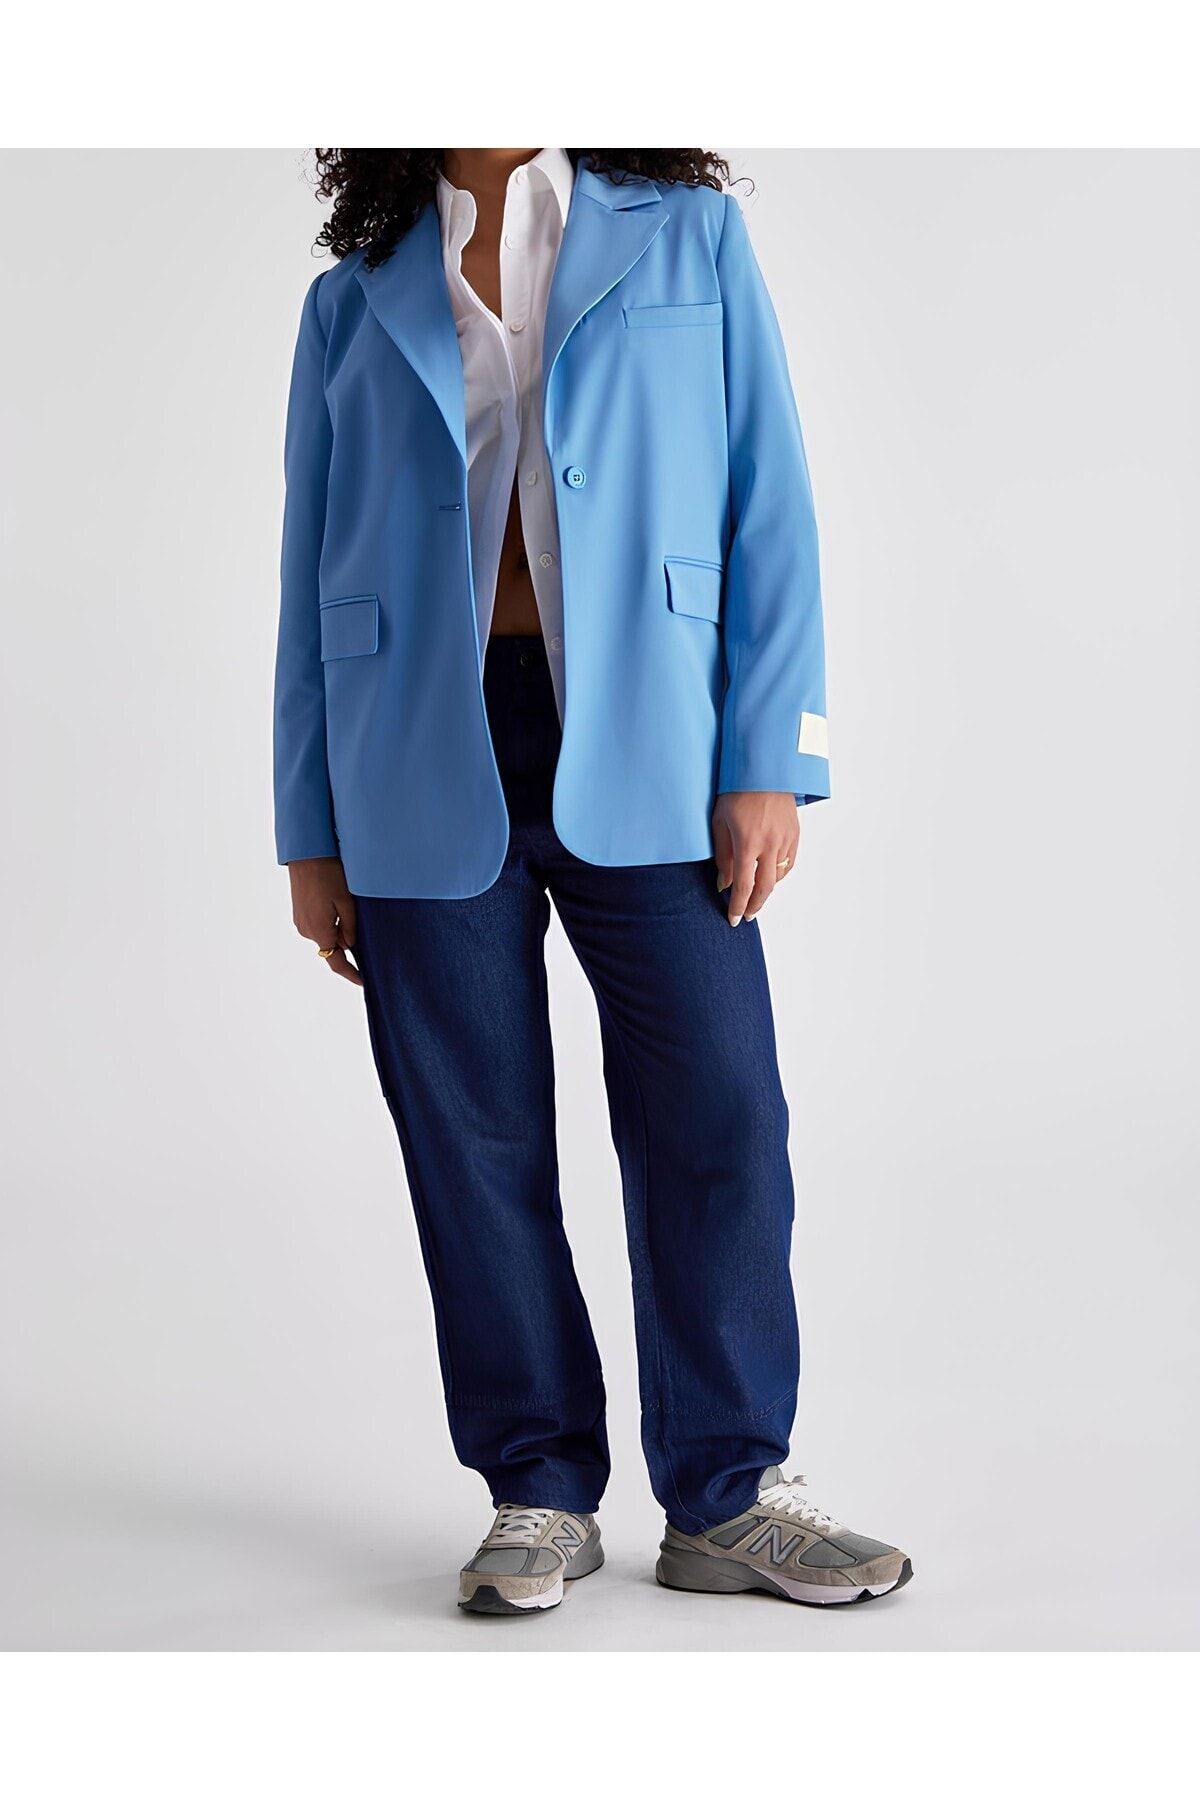 ozze butik Kadın Mavi Blazer Ceket